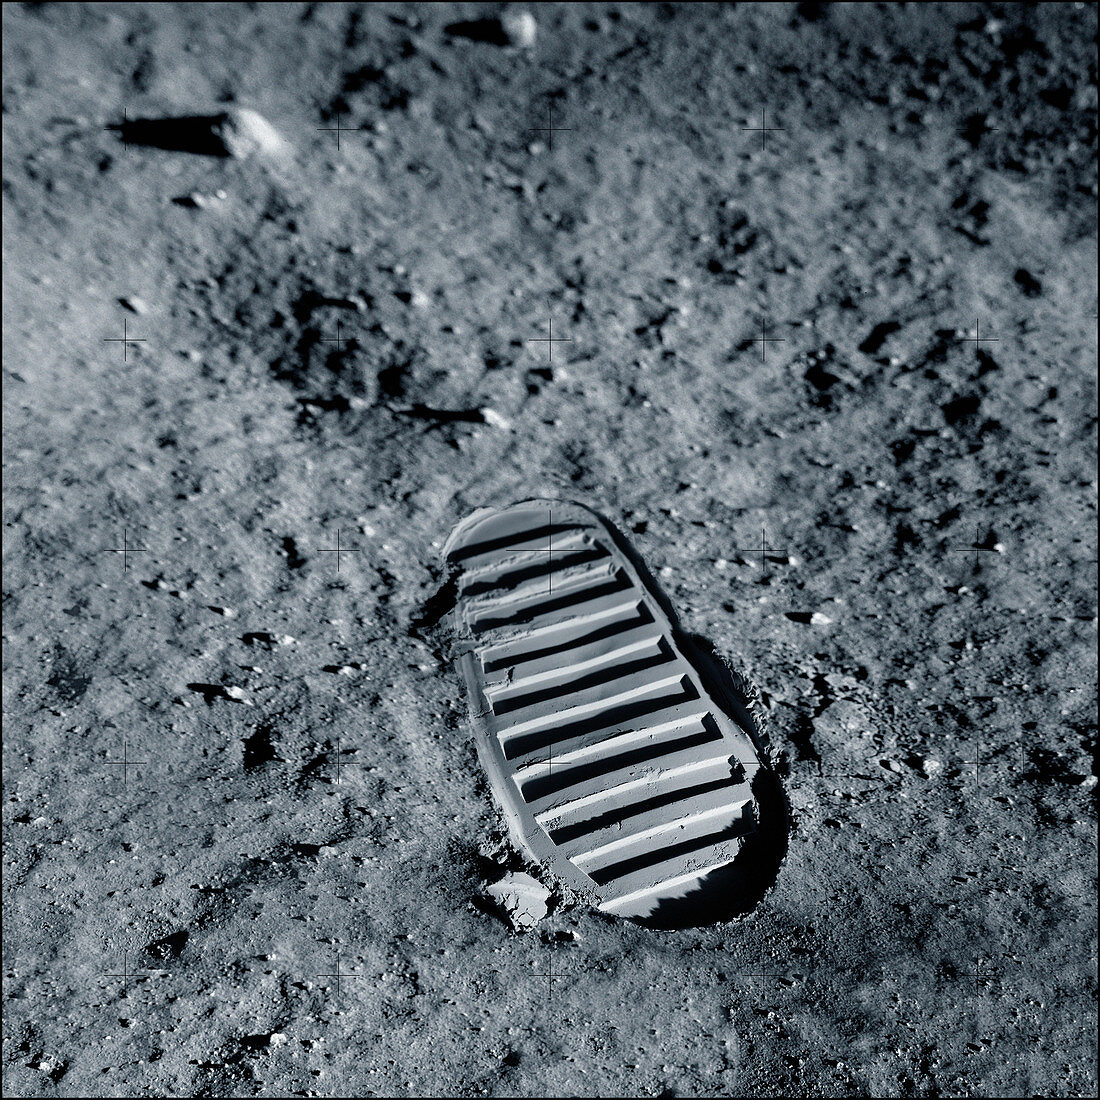 Apollo bootprint on the Moon, illustration